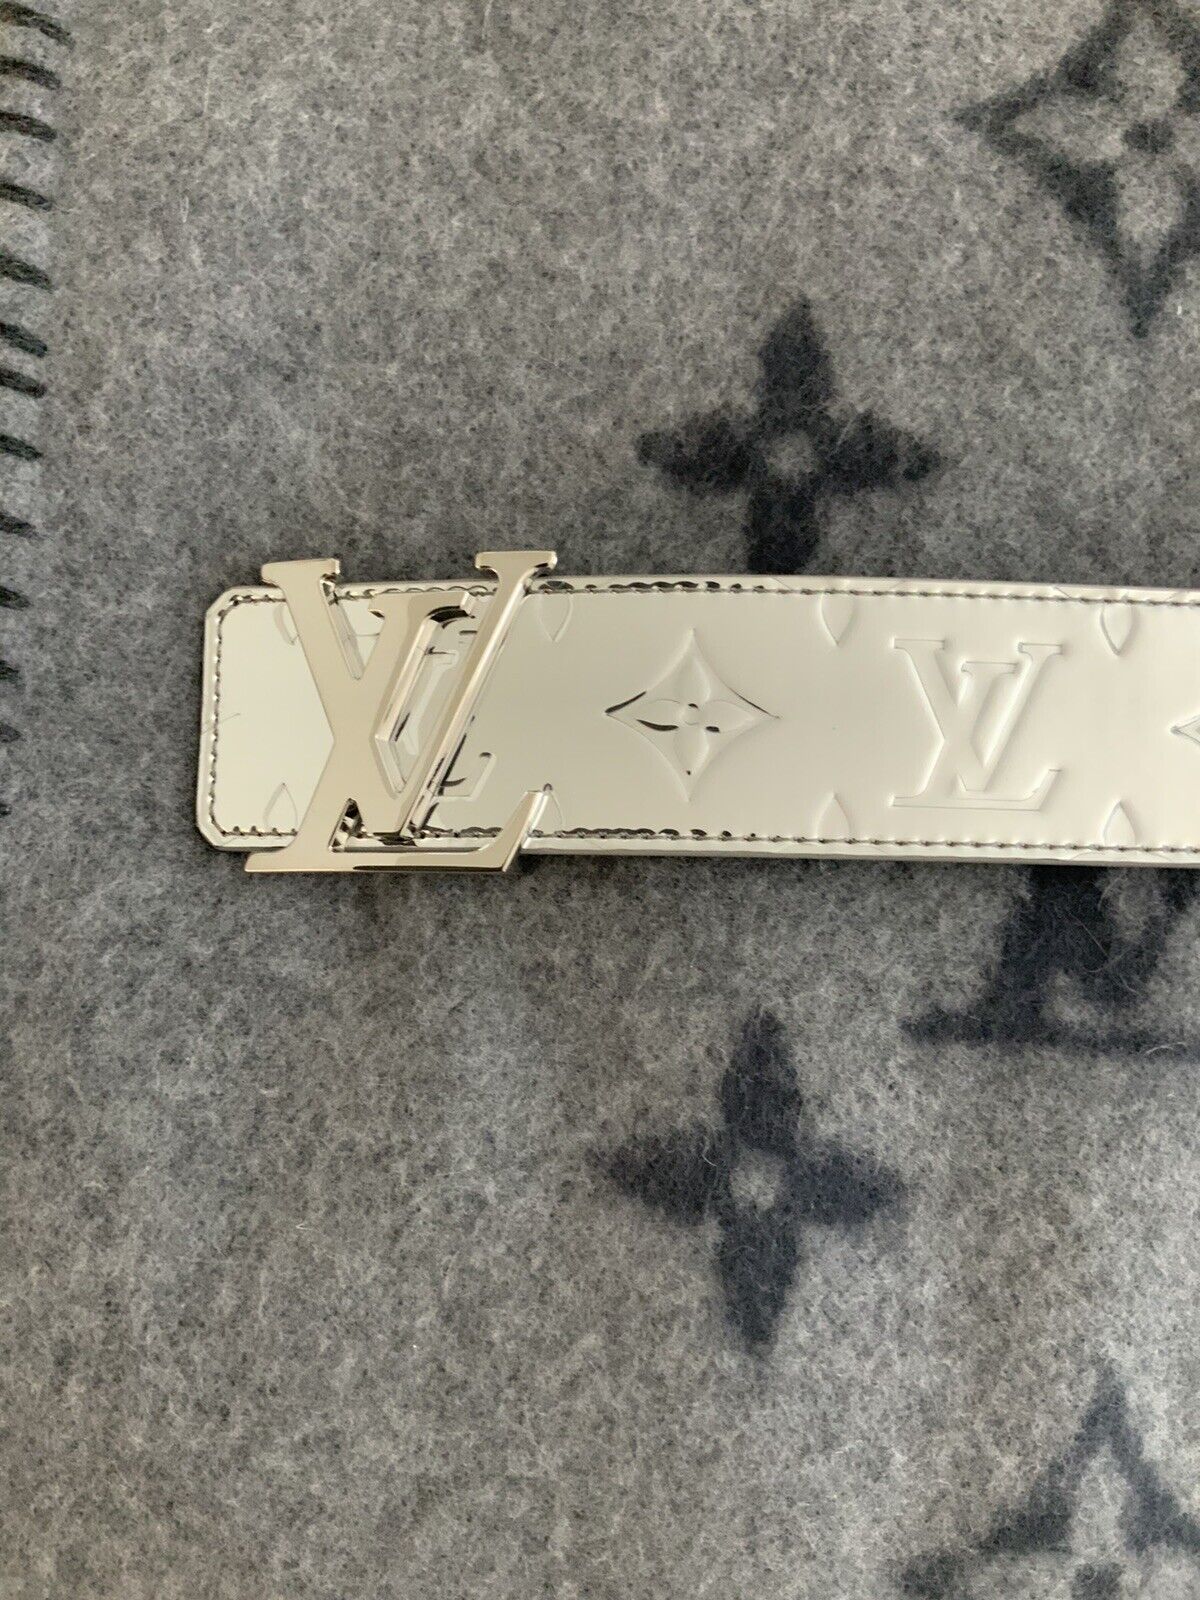 Louis Vuitton Virgil Abloh Monogram Mirror Reversible Belt 100cm